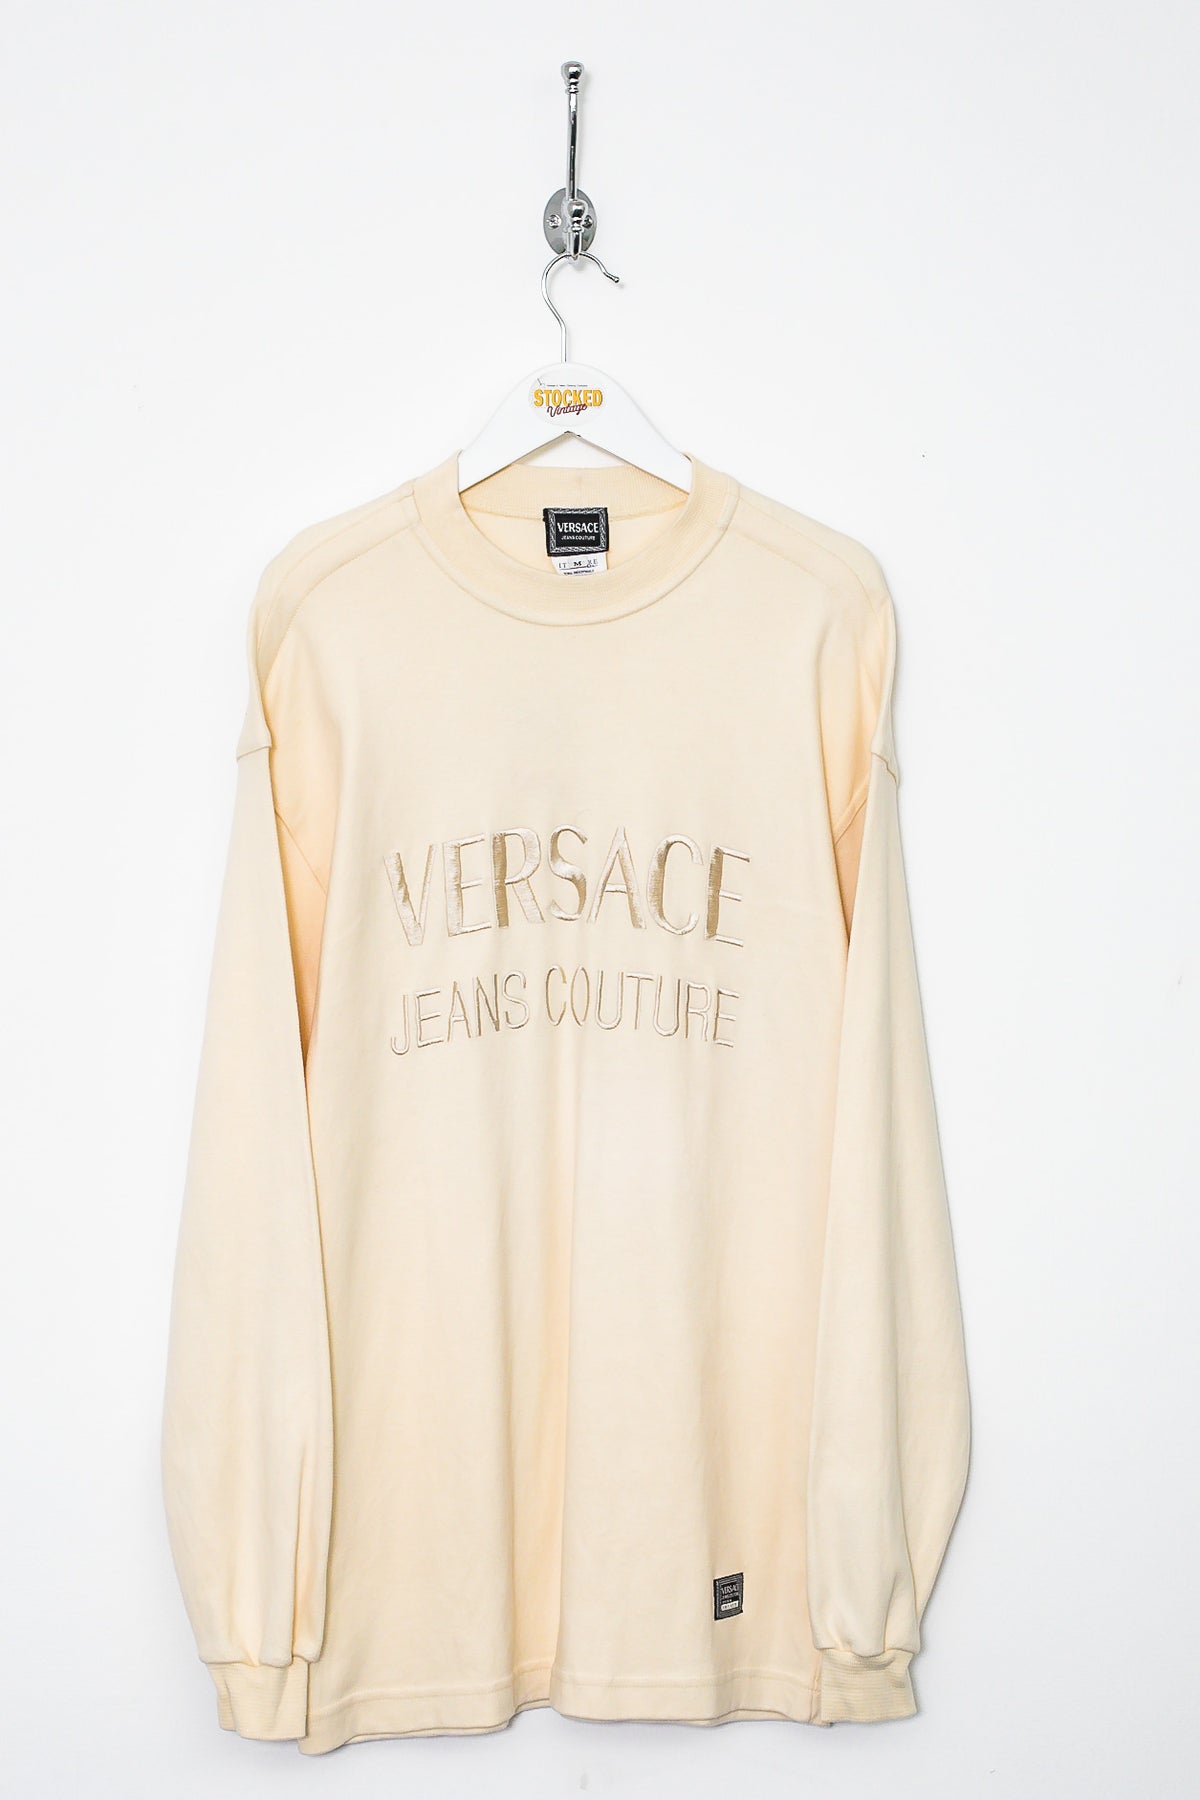 90s Versace Sweatshirt (M)